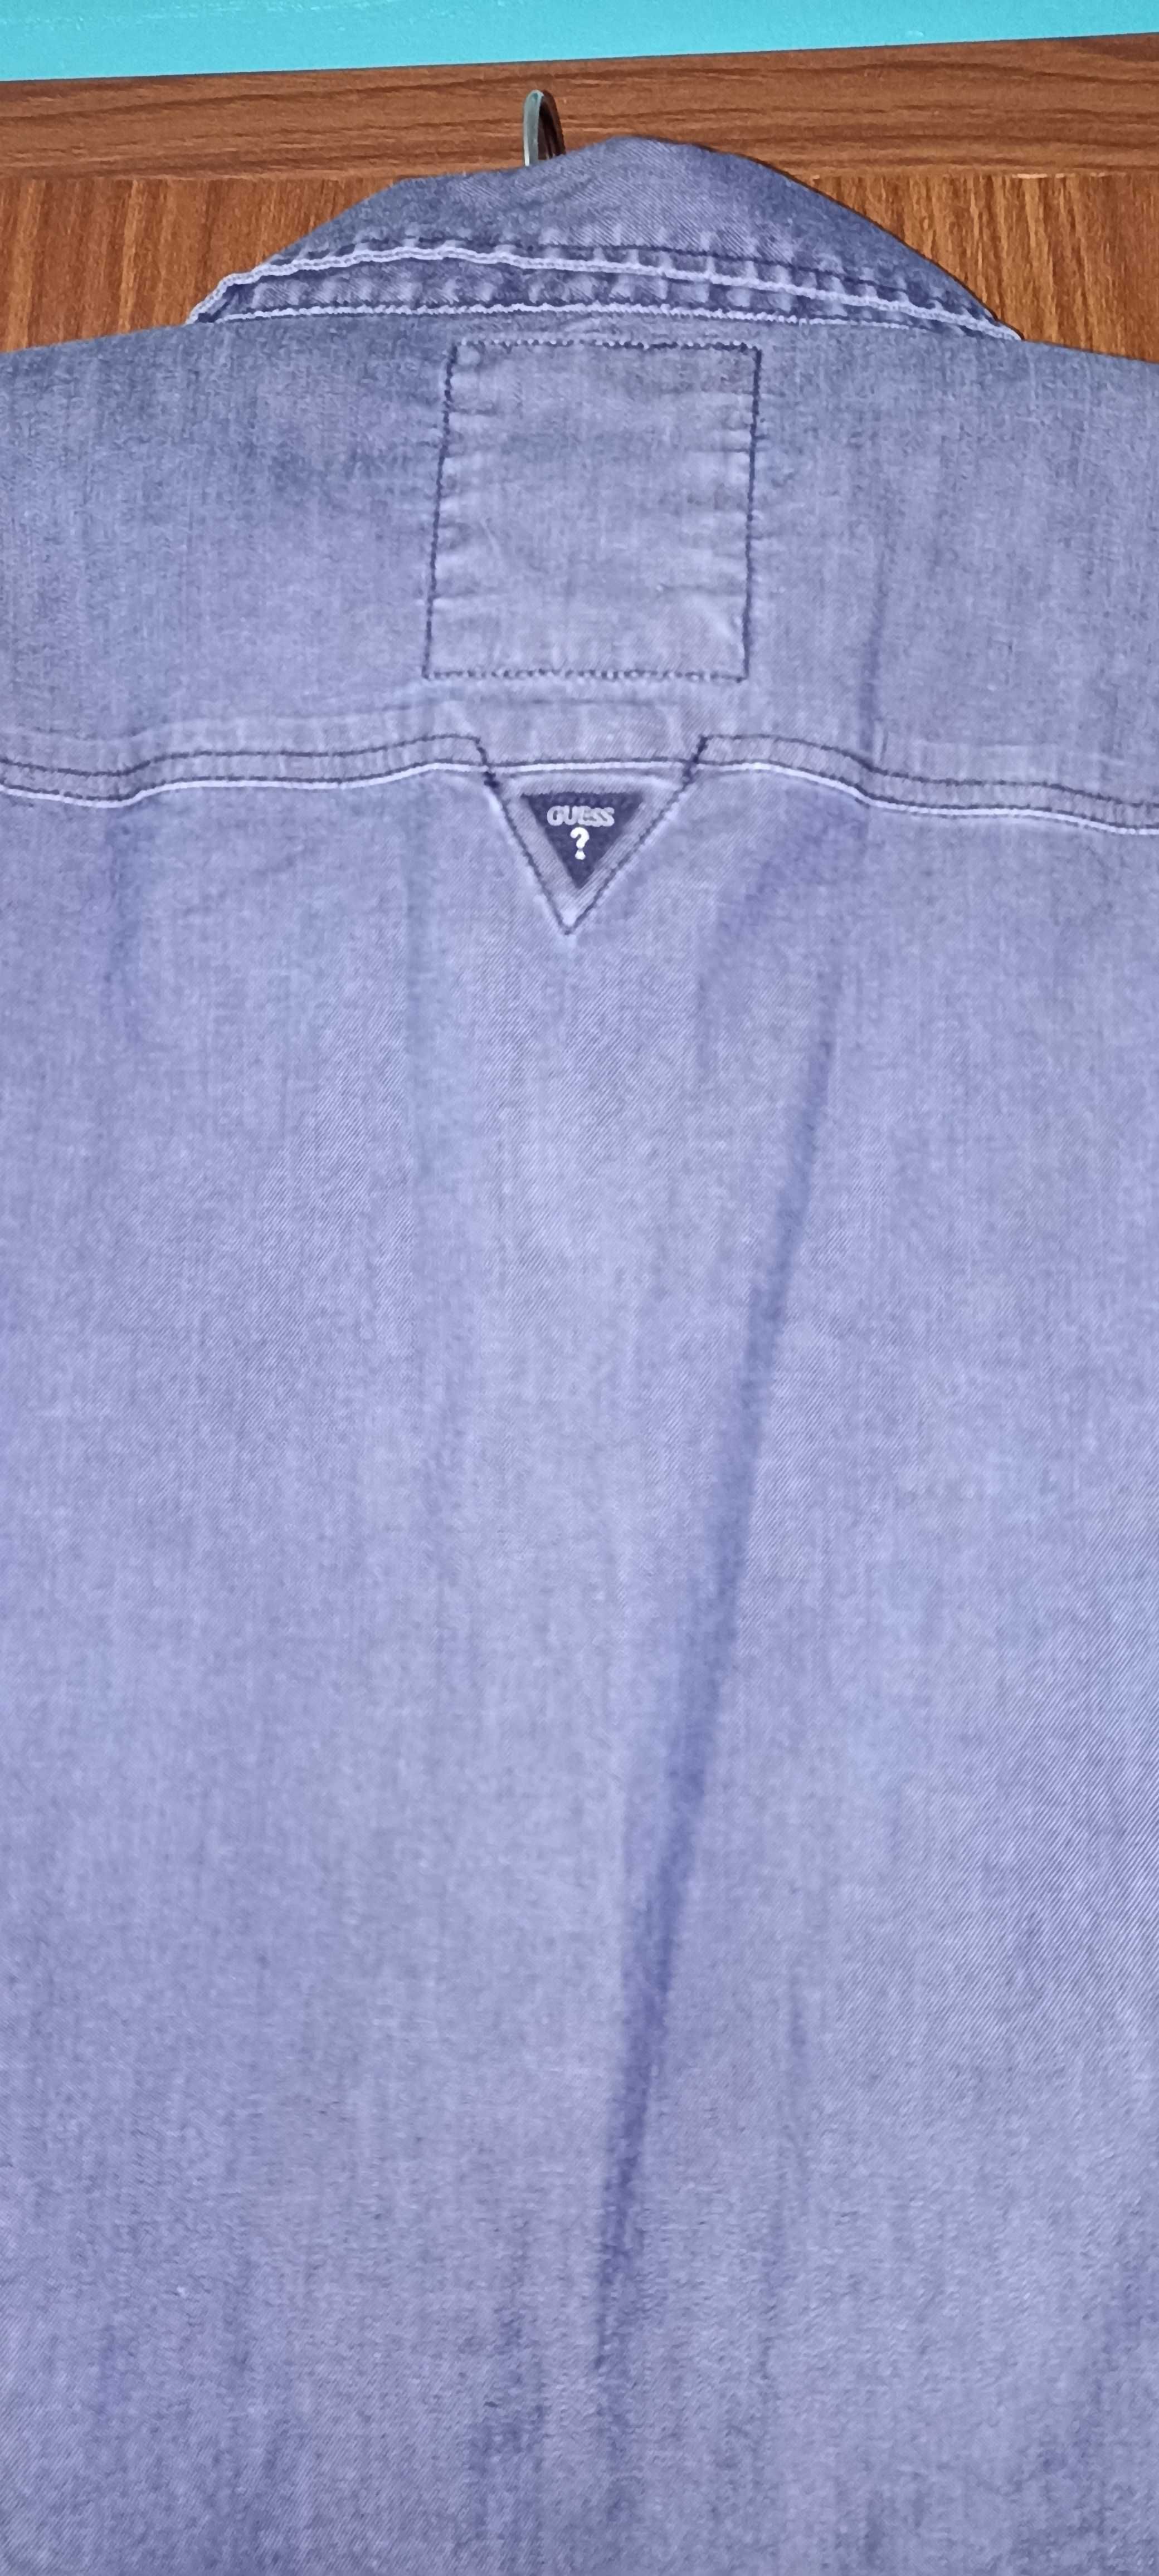 Jeansowa koszula męska. Koszula Guess. Rozmiar L